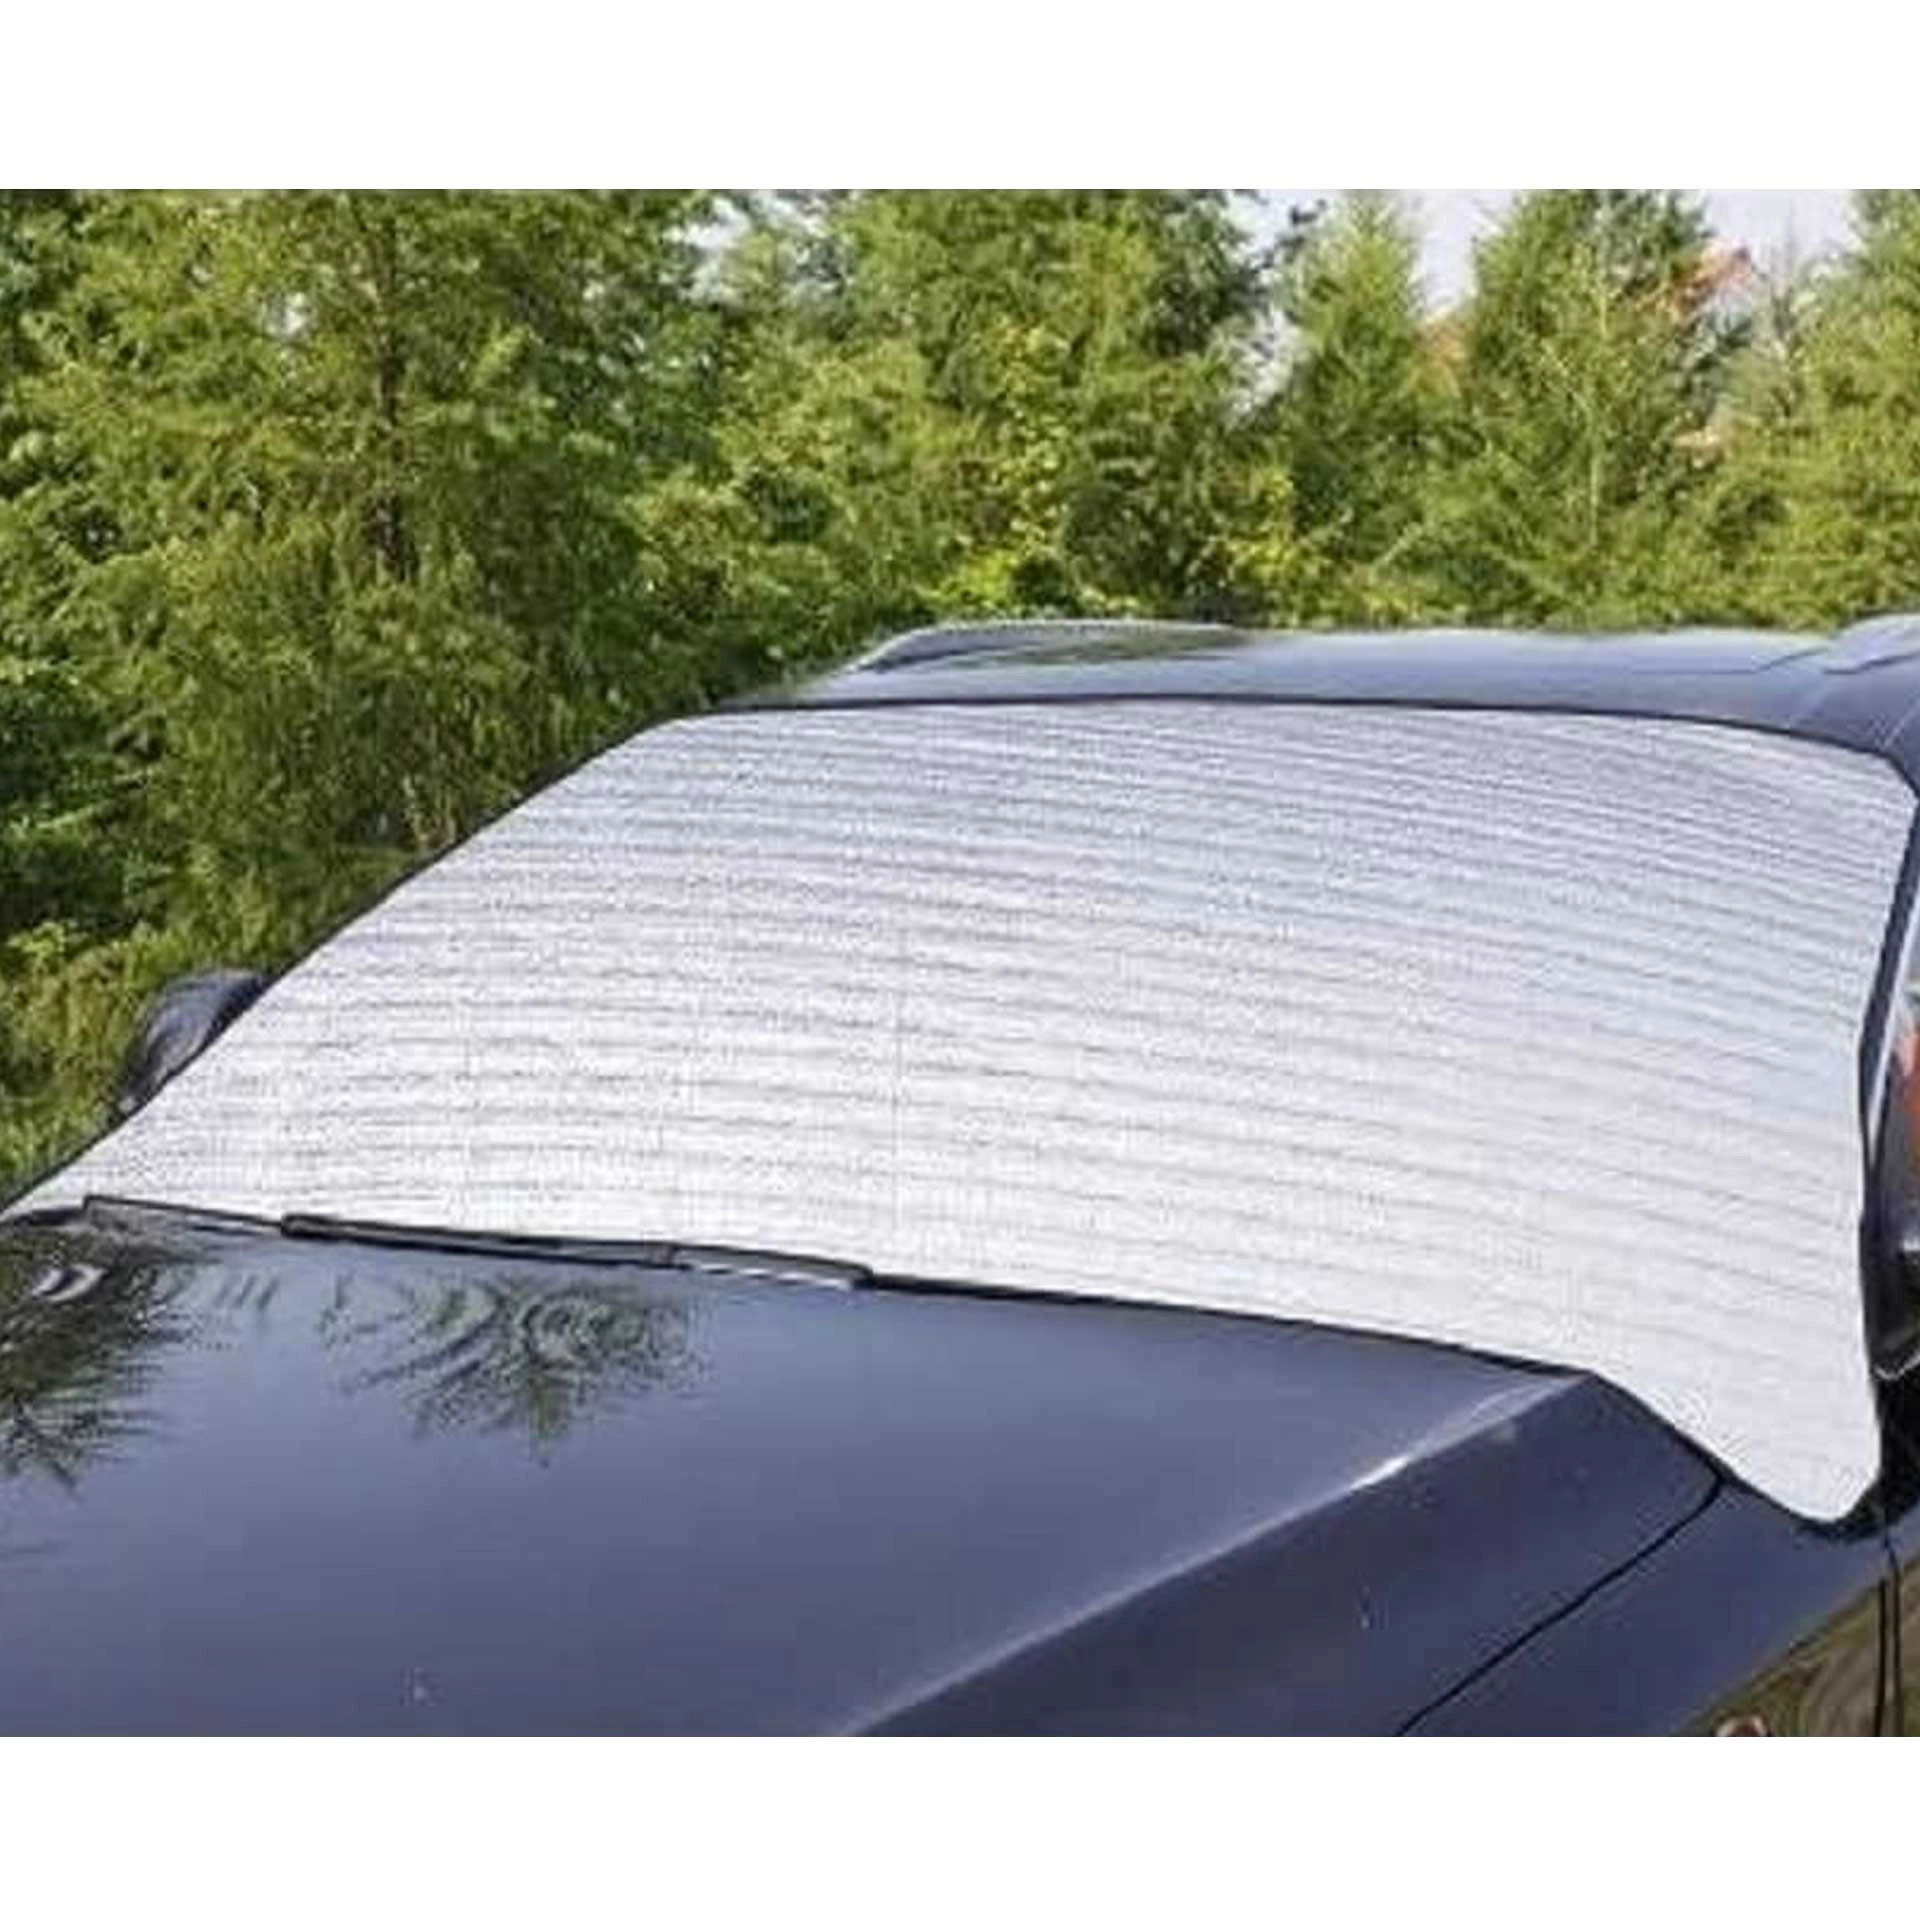 Kaufe RV-Fenster-Windschutzscheiben-Abdeckung, langlebige  Front-Windschutzscheiben-Abdeckung